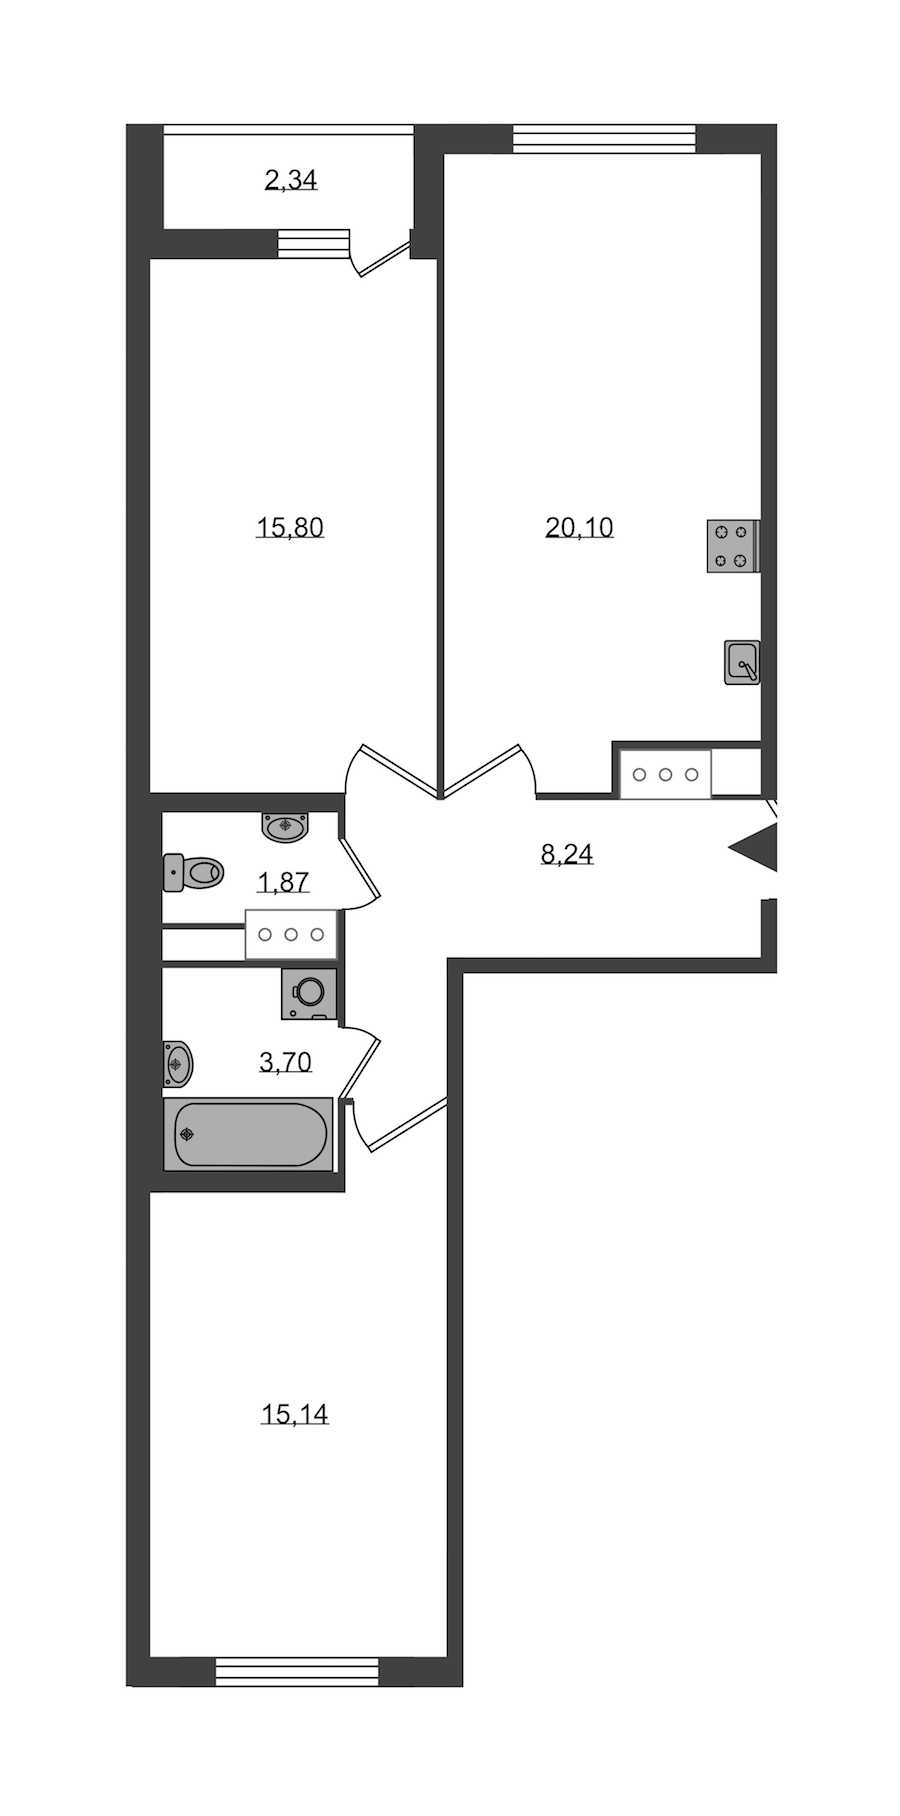 Двухкомнатная квартира в KVS: площадь 64.85 м2 , этаж: 7 – купить в Санкт-Петербурге